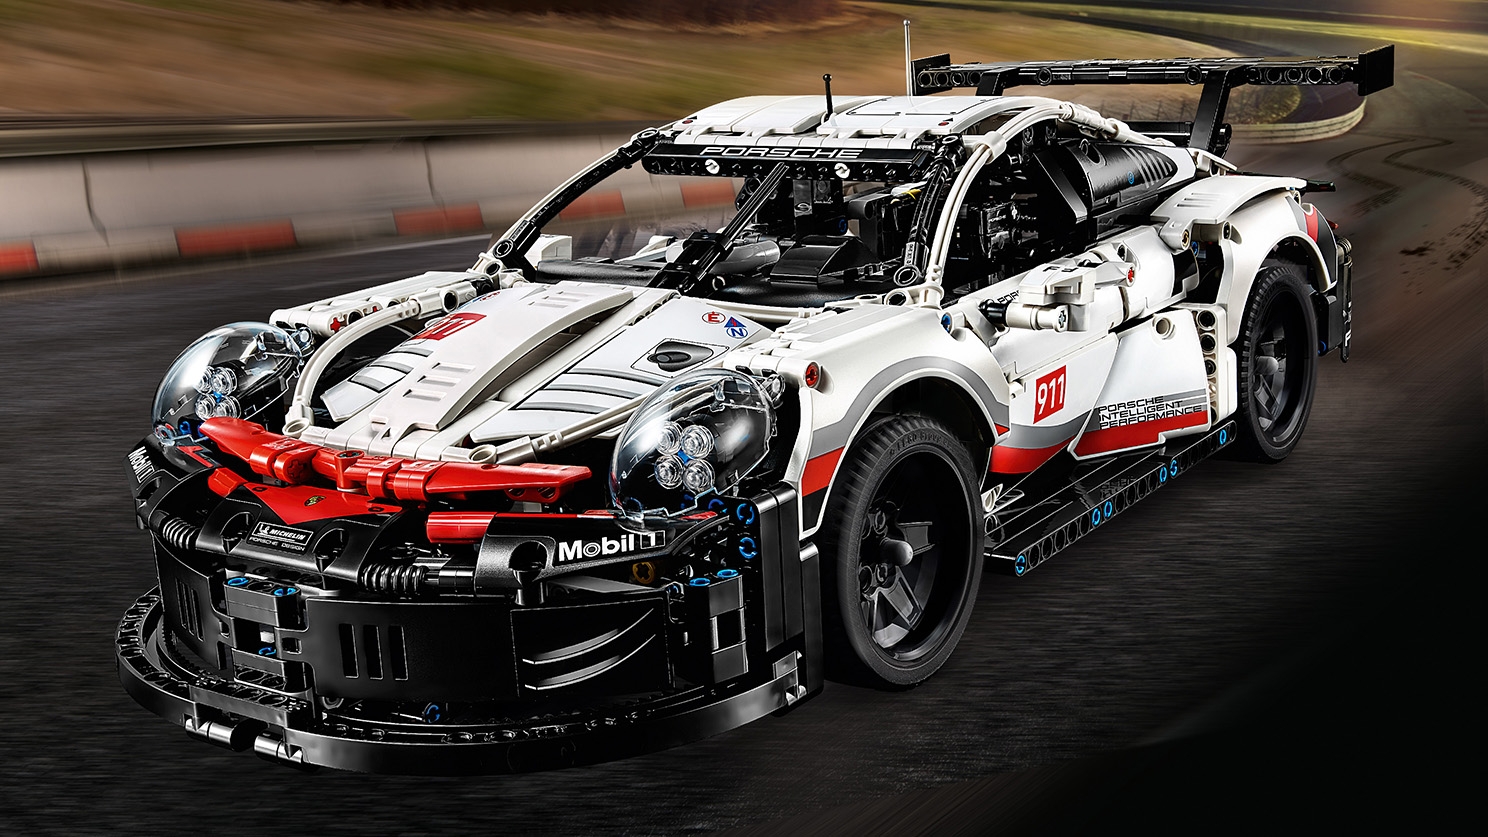 ポルシェ 911 RSR - ビデオ - LEGO.comキッズ